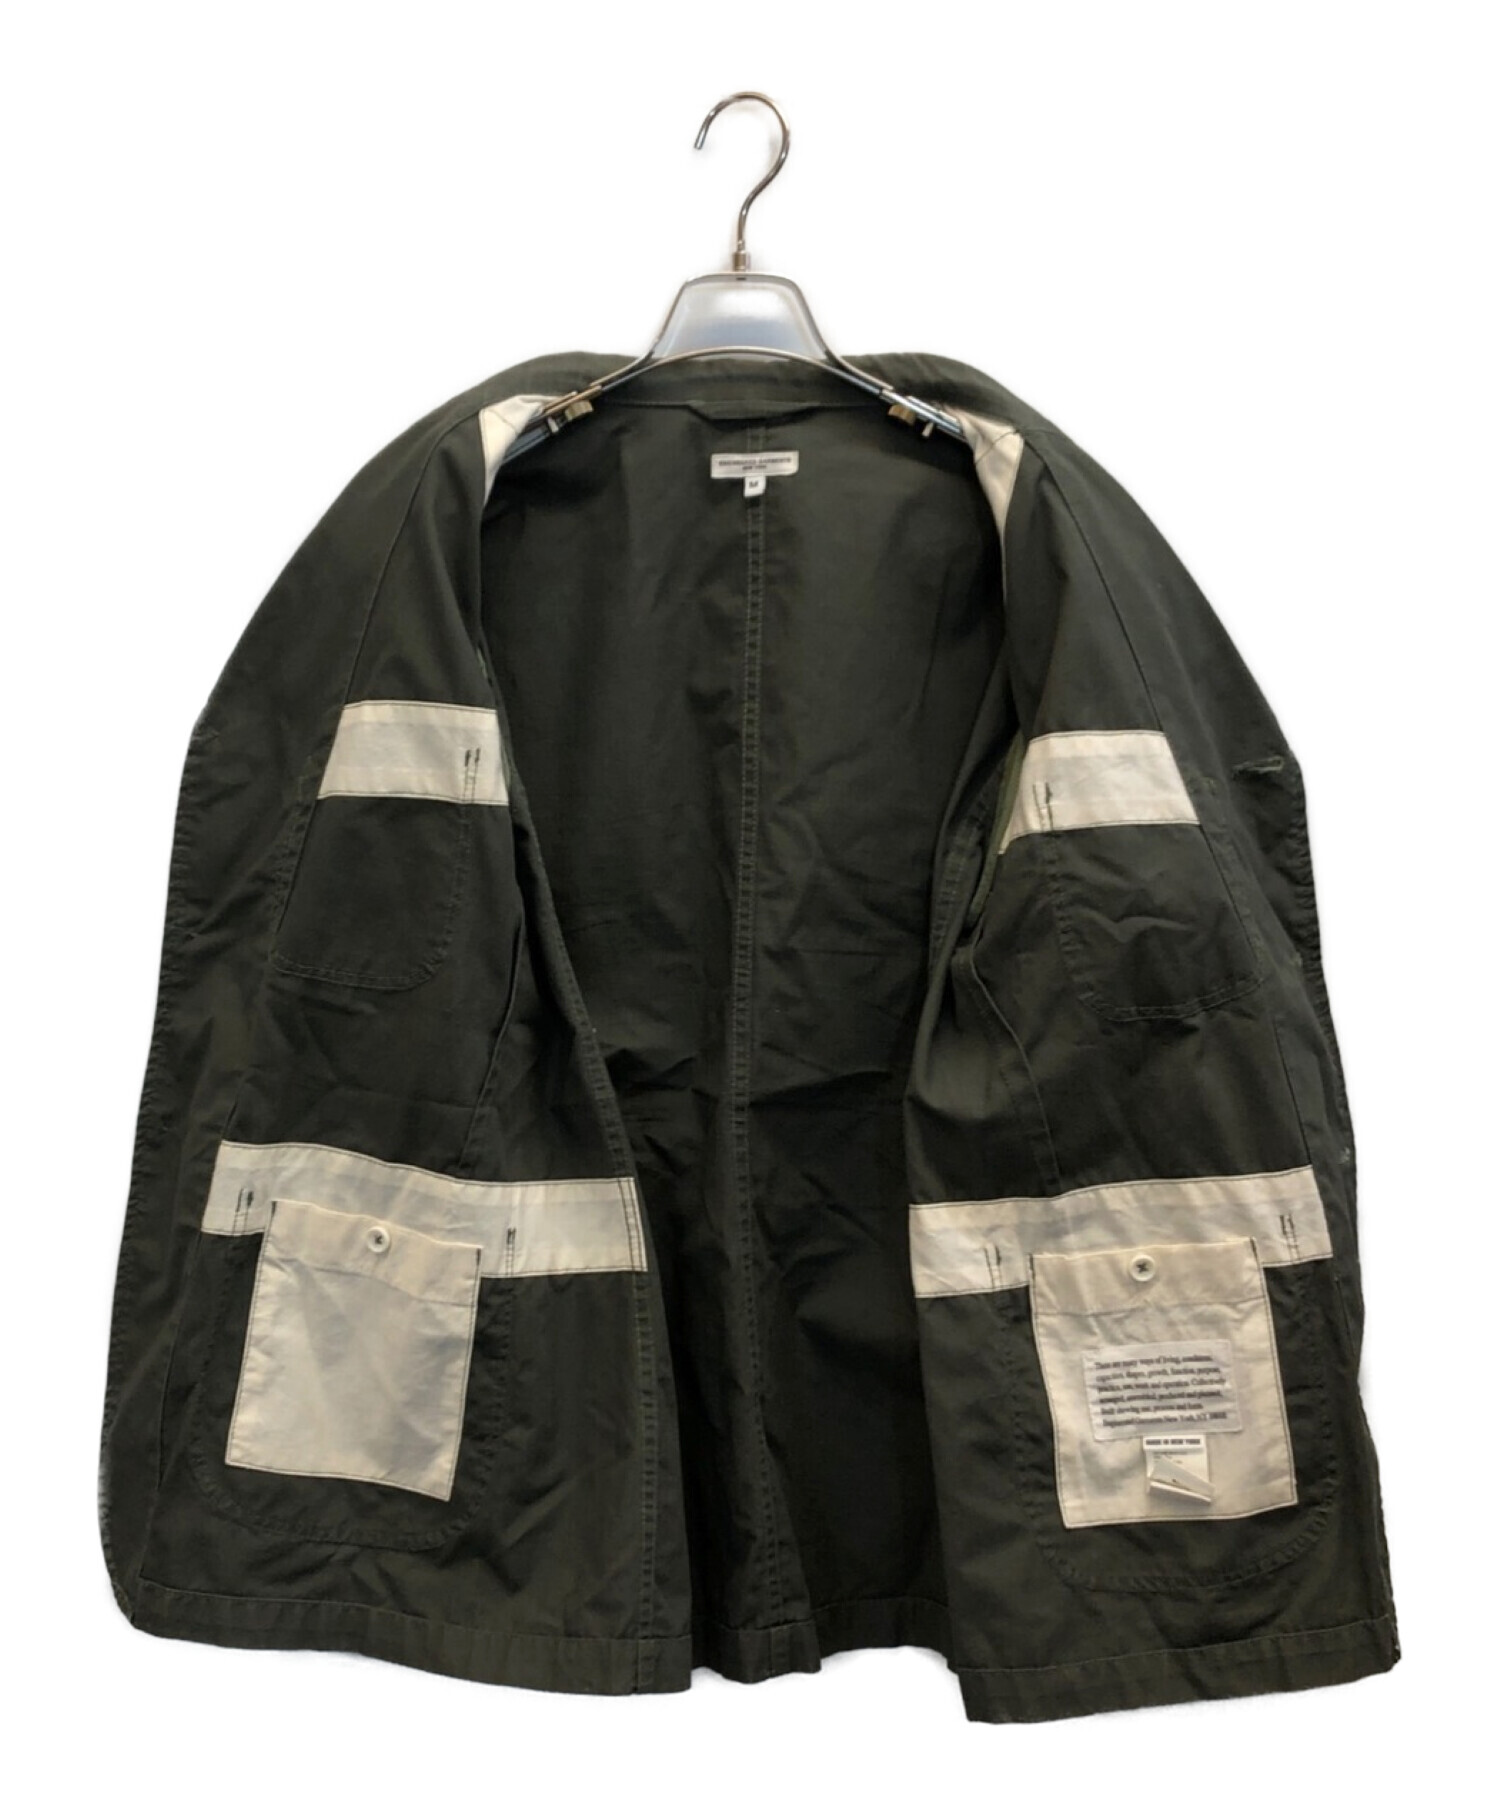 Engineered Garments (エンジニアド ガーメンツ) Bedford Jacket ベッドフォードジャケット カーキ サイズ:M